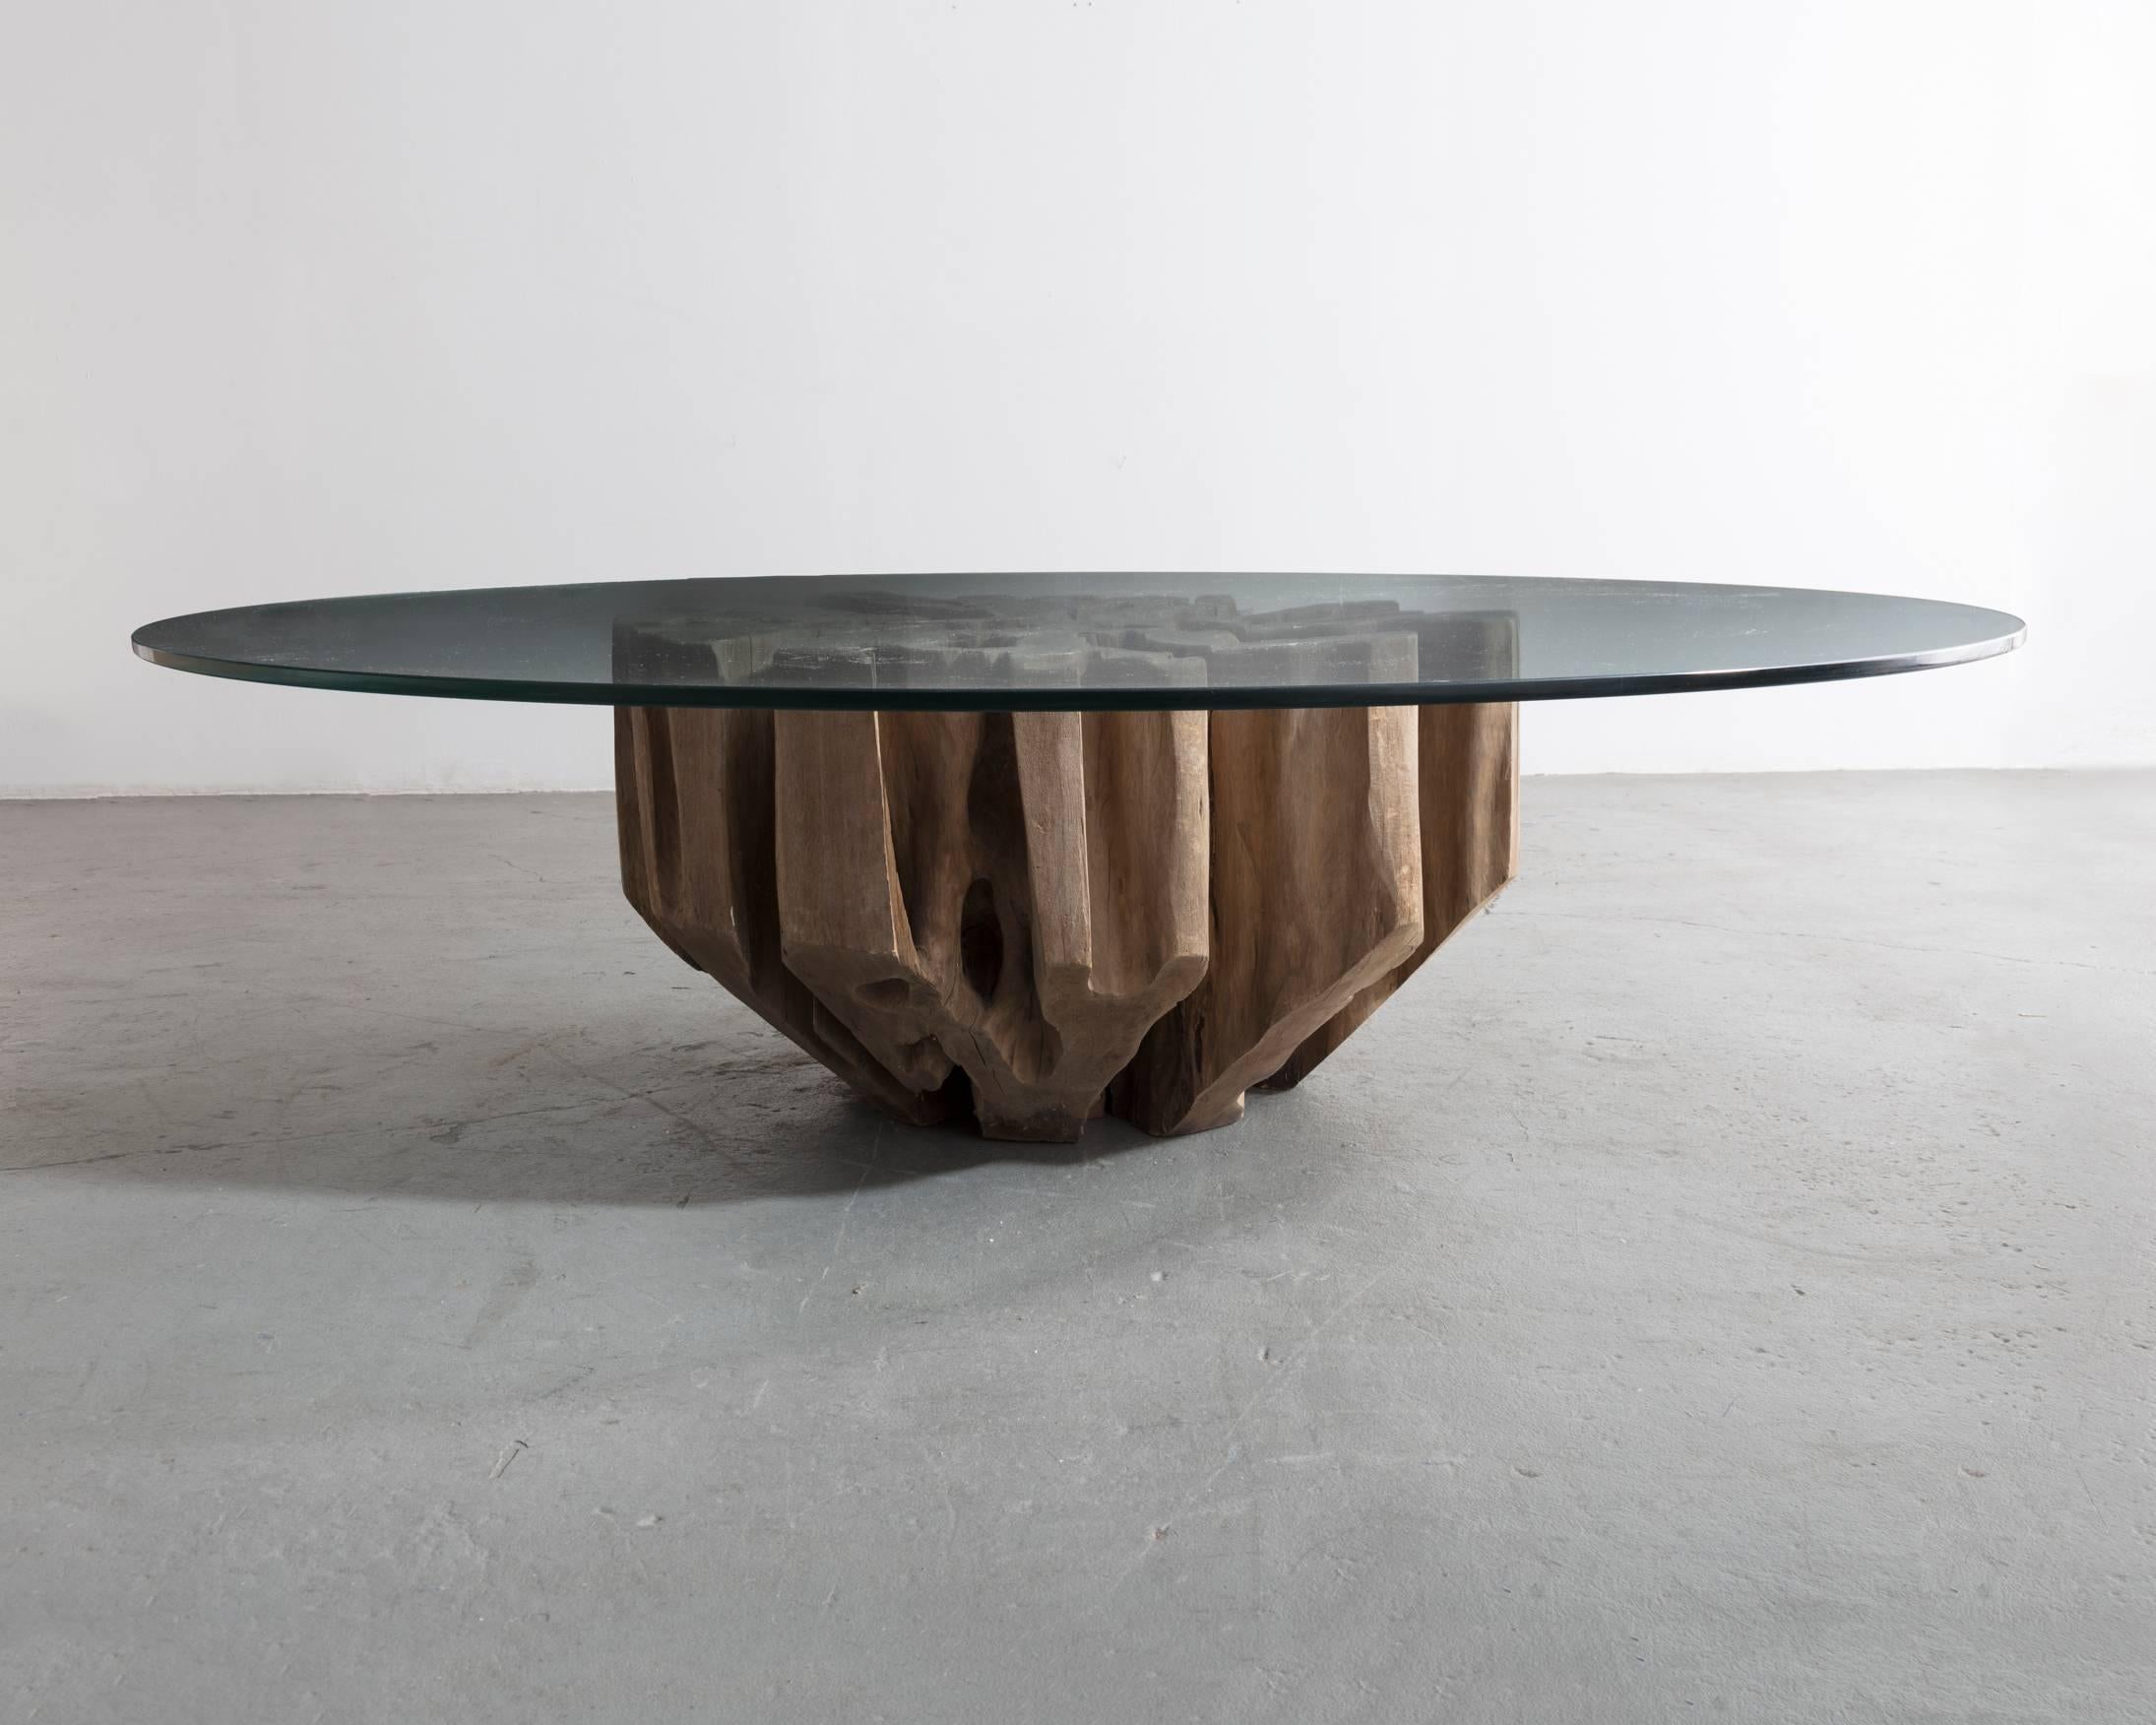 Base de table basse sculpturale en bois massif conçue par José Zanine Caldas et fabriquée par son atelier, Brésil, c. 1988.